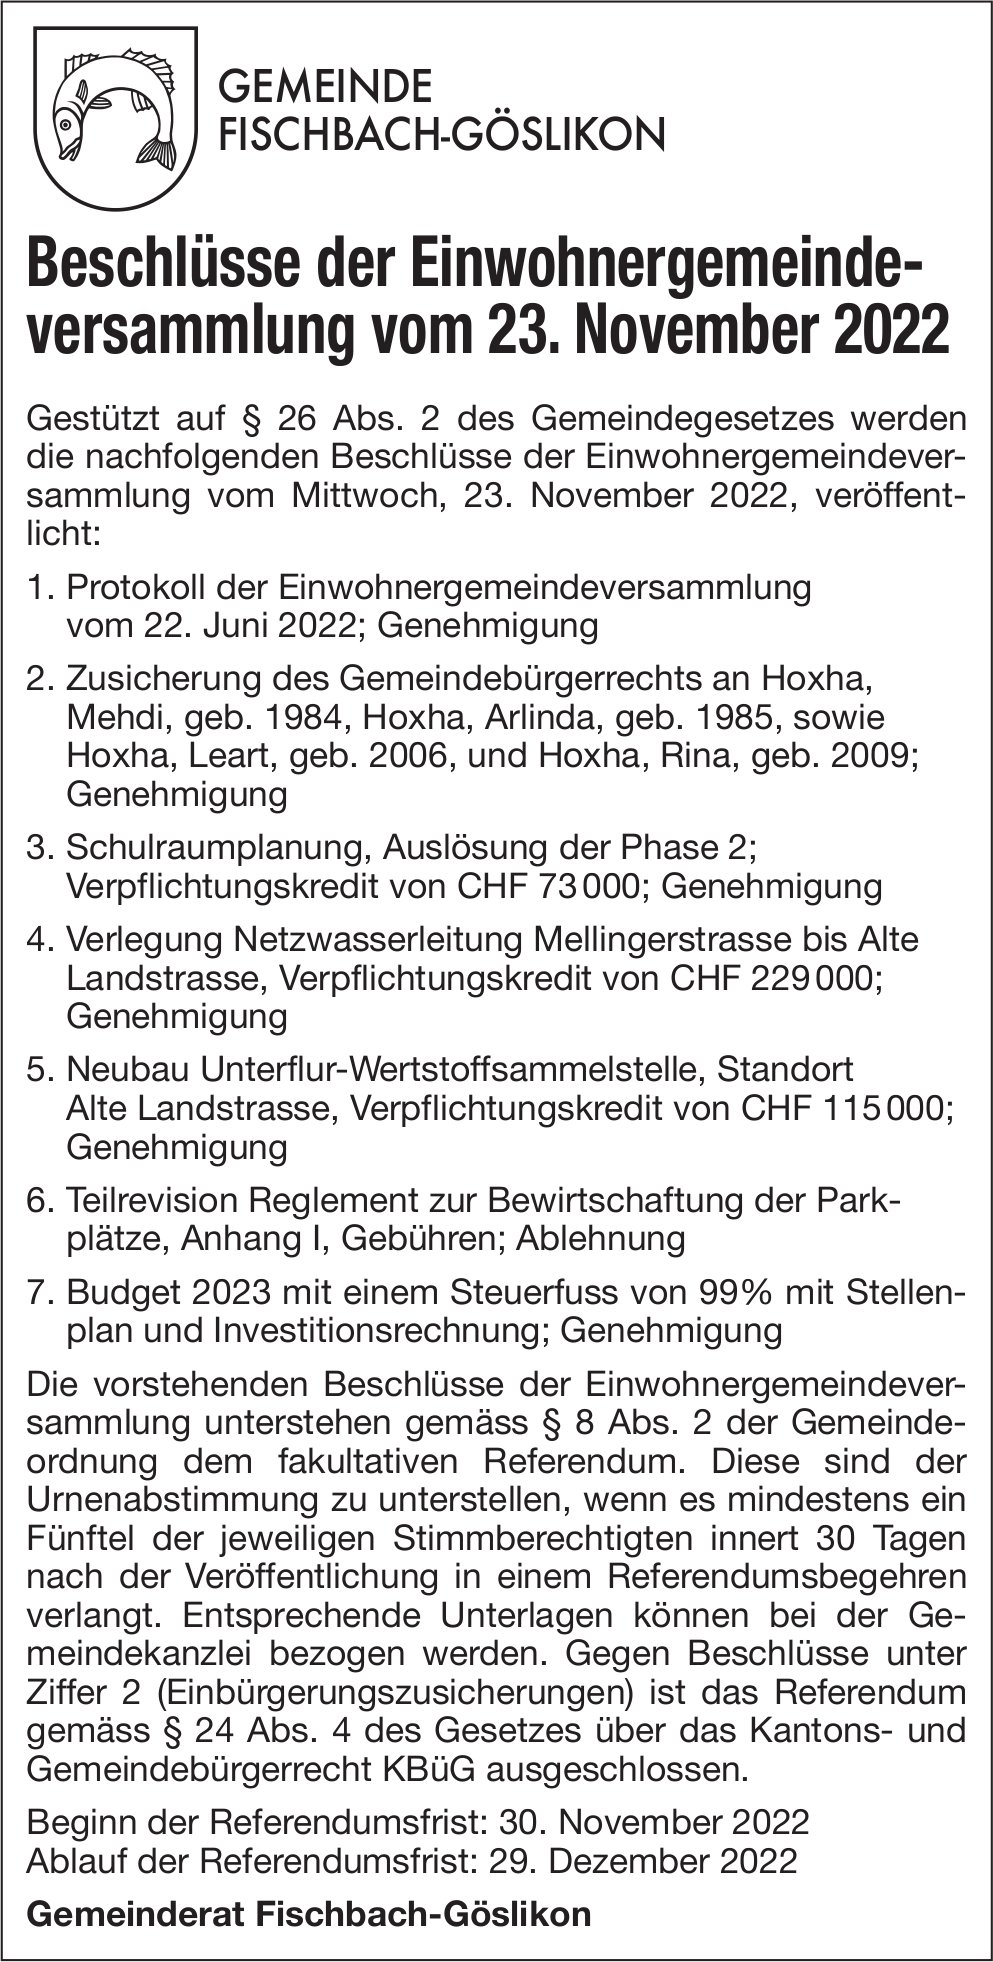 Fischbach-Göslikon - Beschlüsse der Einwohnergemeindeversammlung vom 23. November 2022